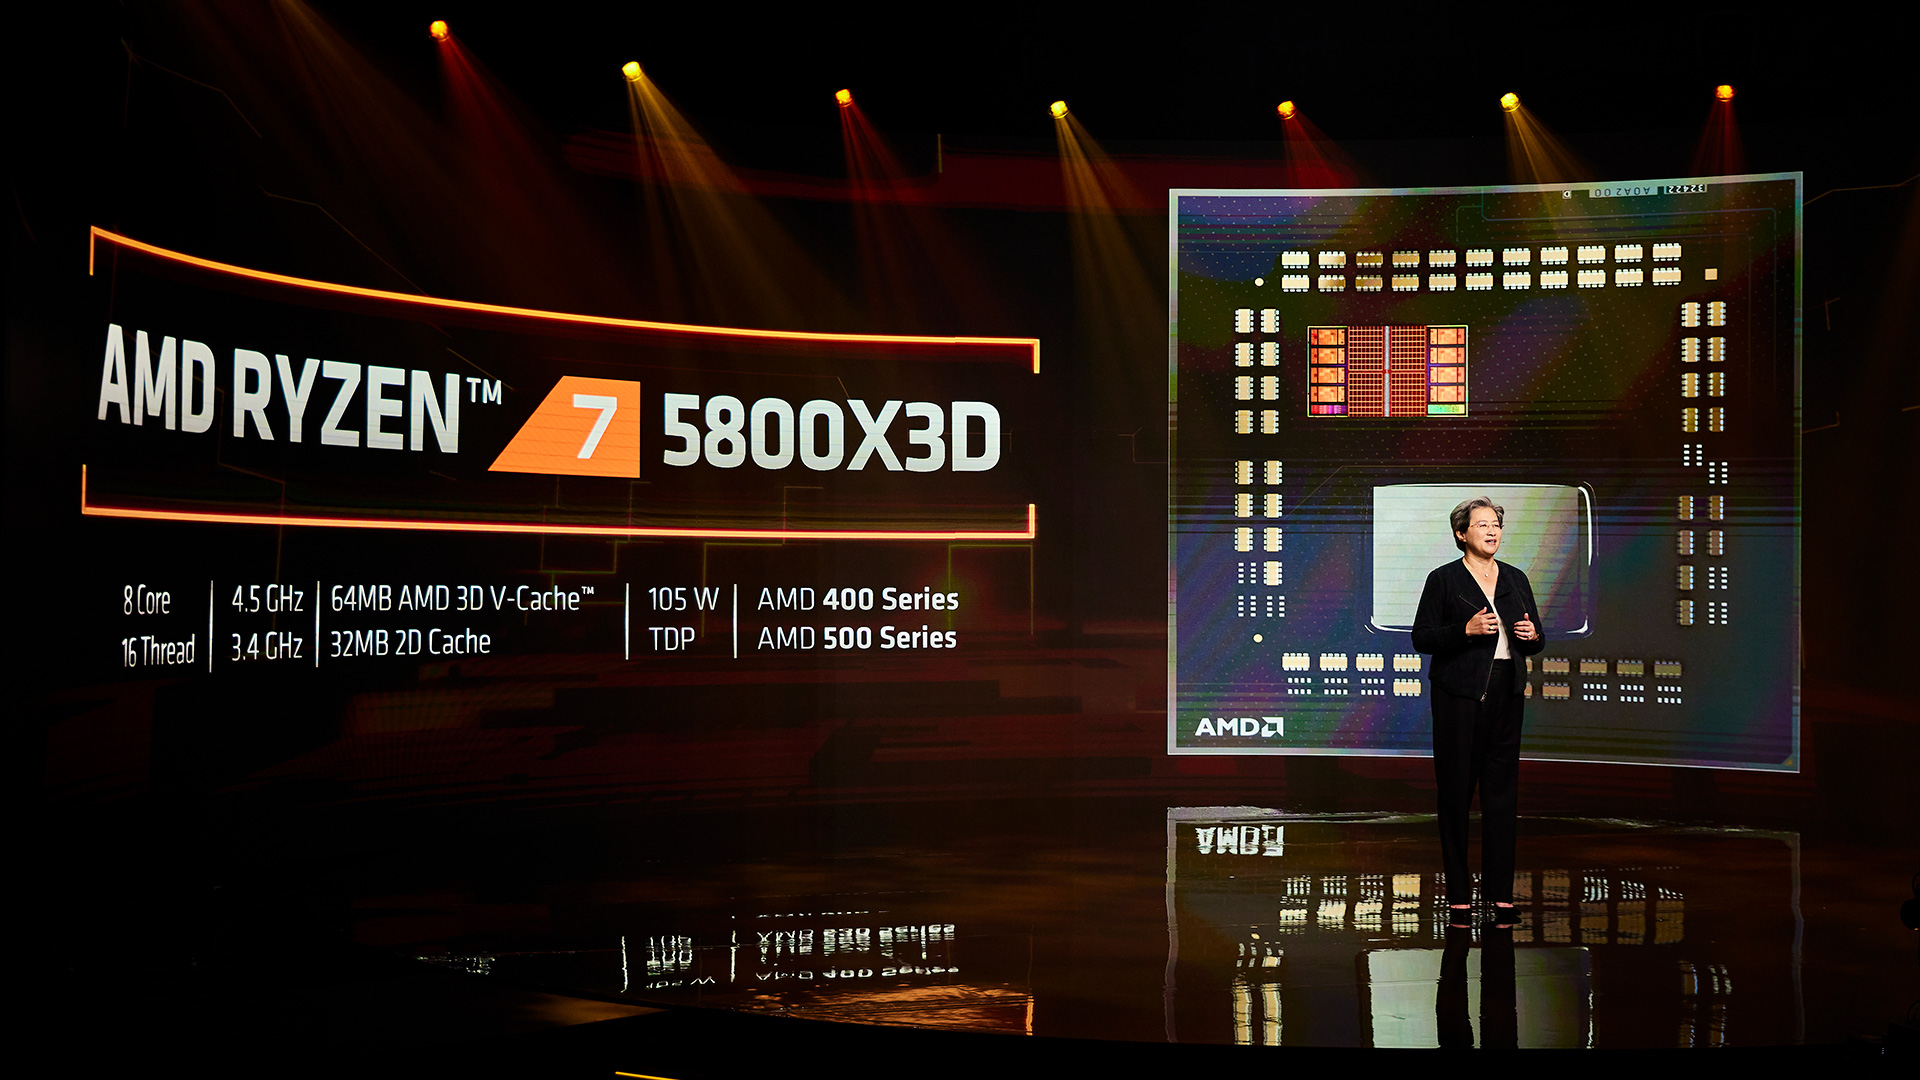 معرفی پردازنده AMD Ryzen 7 5800X3D با حافظه 3D V-Cache 